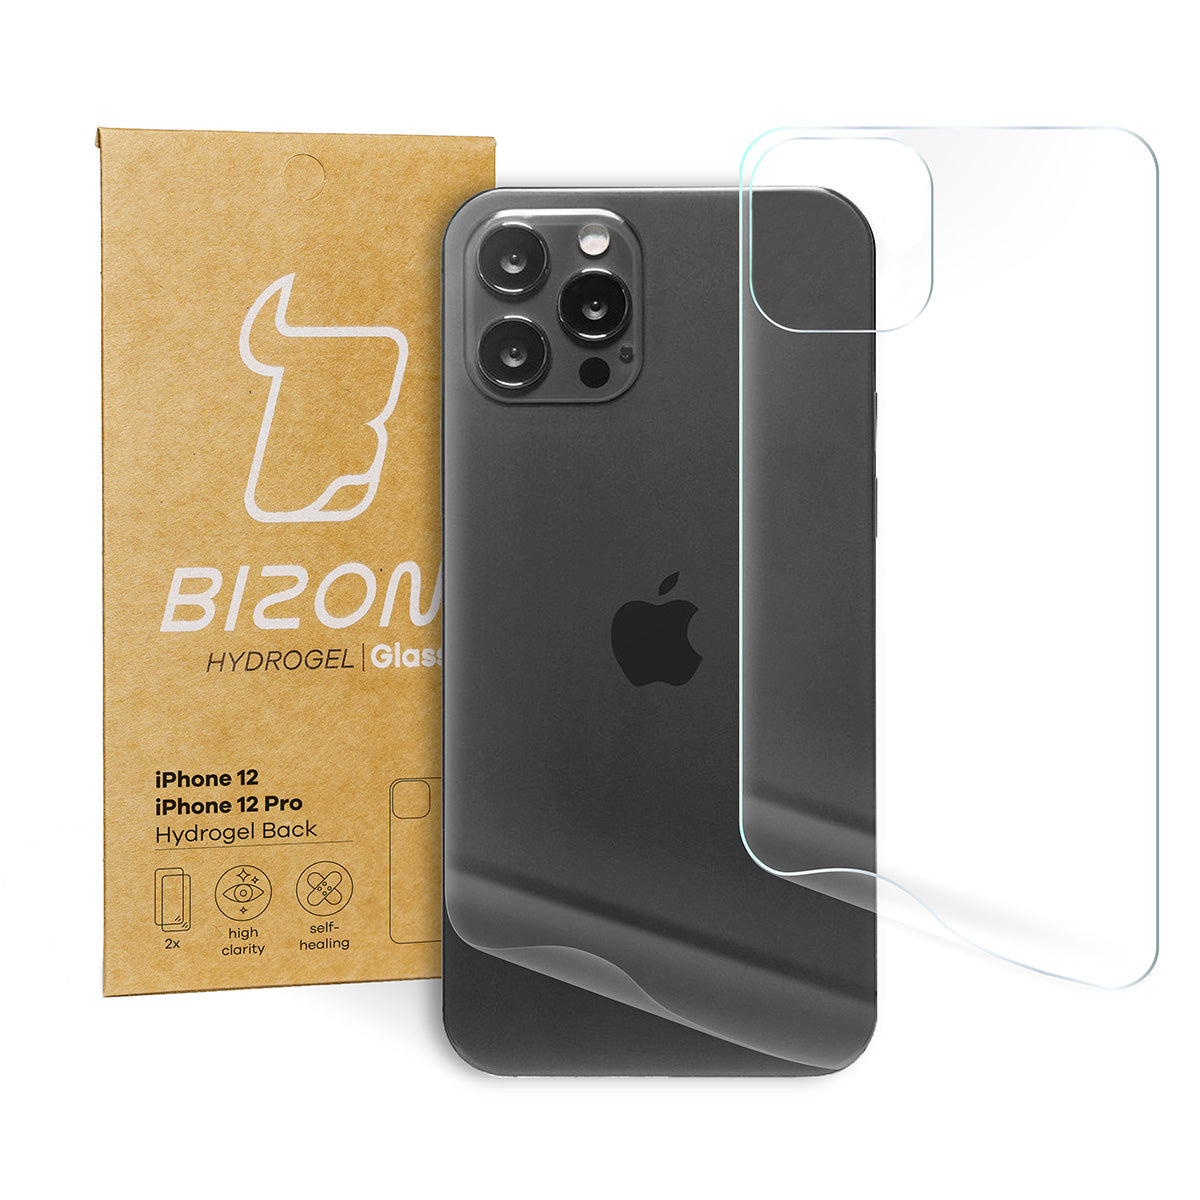 Hydrogel Folie für die Rückseite Bizon Glass, iPhone 12 / 12 Pro, 2 Stück